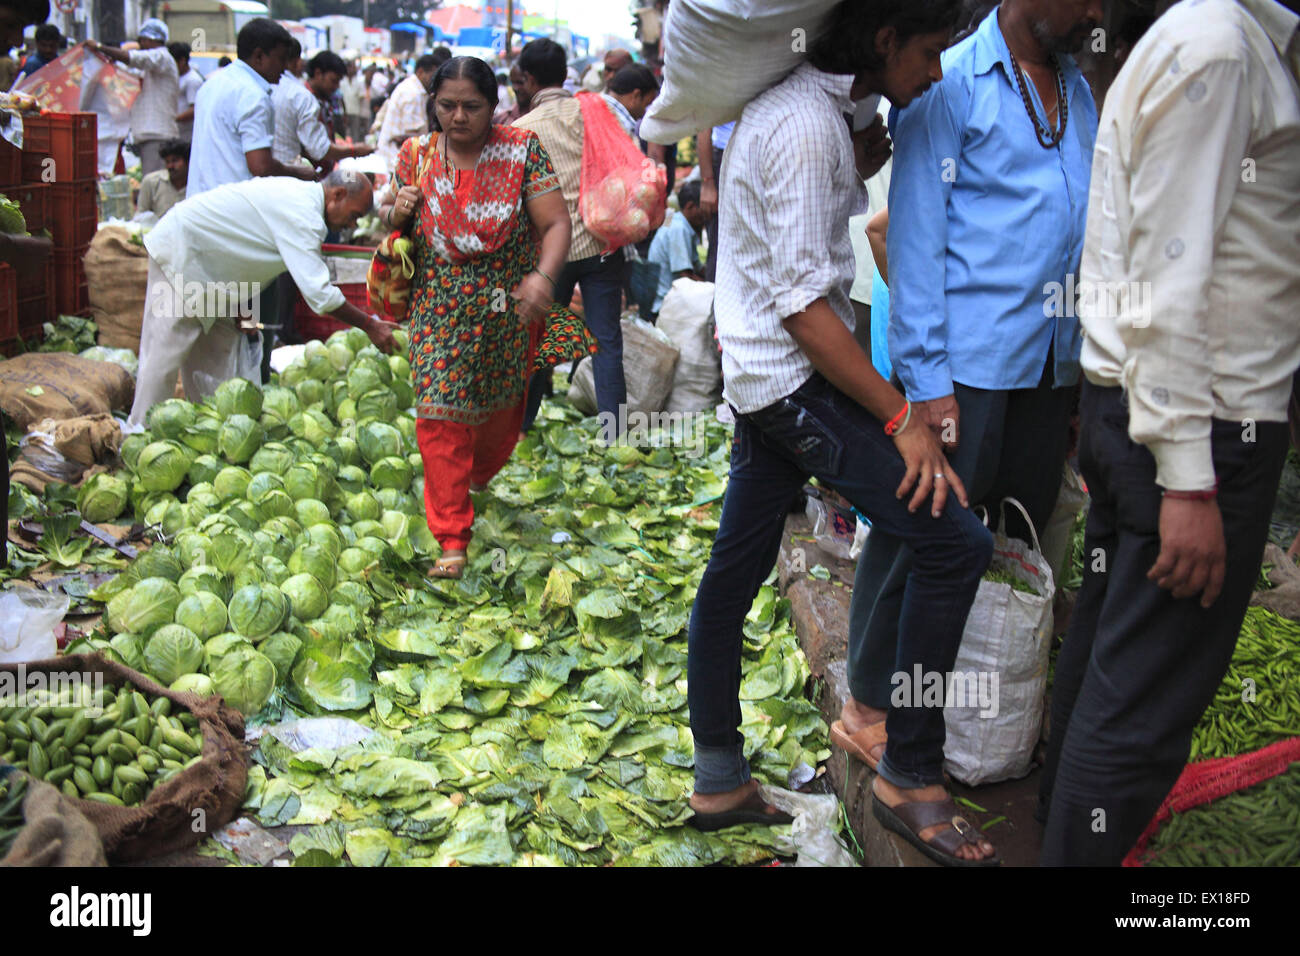 22. August 2014 - 22. August 2014 - Mumbai, Indien:. Eine Frau für Gemüse einkaufen geht auf einen Haufen ausrangierten & Abfall Gemüse auf dem Gemüsemarkt Dadar in Mumbai. Hunderte von Tonnen Gemüse sind auf einer täglichen Basis auf dem Gemüsemarkt Dadar verschwendet. Indien, der weltweit größte Produzent von Milch und der zweitgrößte Produzent von Obst und Gemüse, ist auch einer der größten Lebensmittel-Verschwender in der Welt - 440 Milliarden Rupien Wert von Obst, Gemüse und Getreide jährlich nach Emerson Climate Technologies India, Teil von Emerson, einem US-amerikanischen Fertigung und Techno zu verschwenden Stockfoto